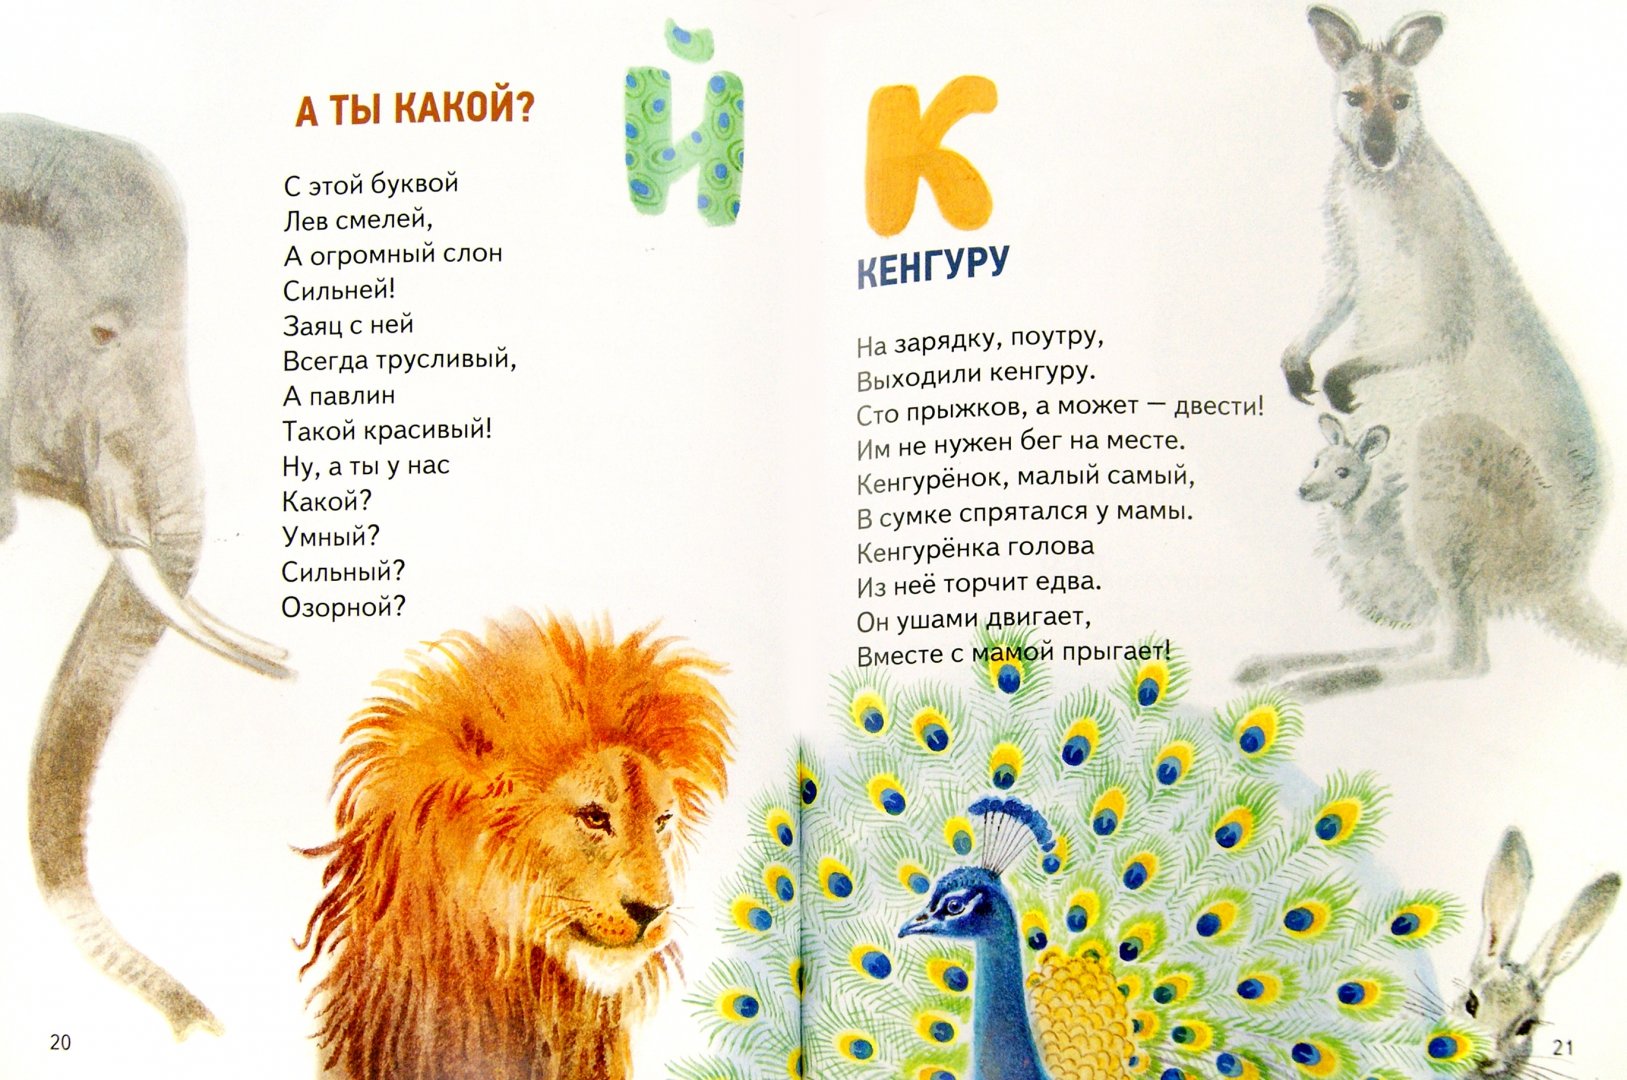 Иллюстрация 1 из 21 для Азбука в зоопарке - Алексей Шевченко | Лабиринт - книги. Источник: Лабиринт